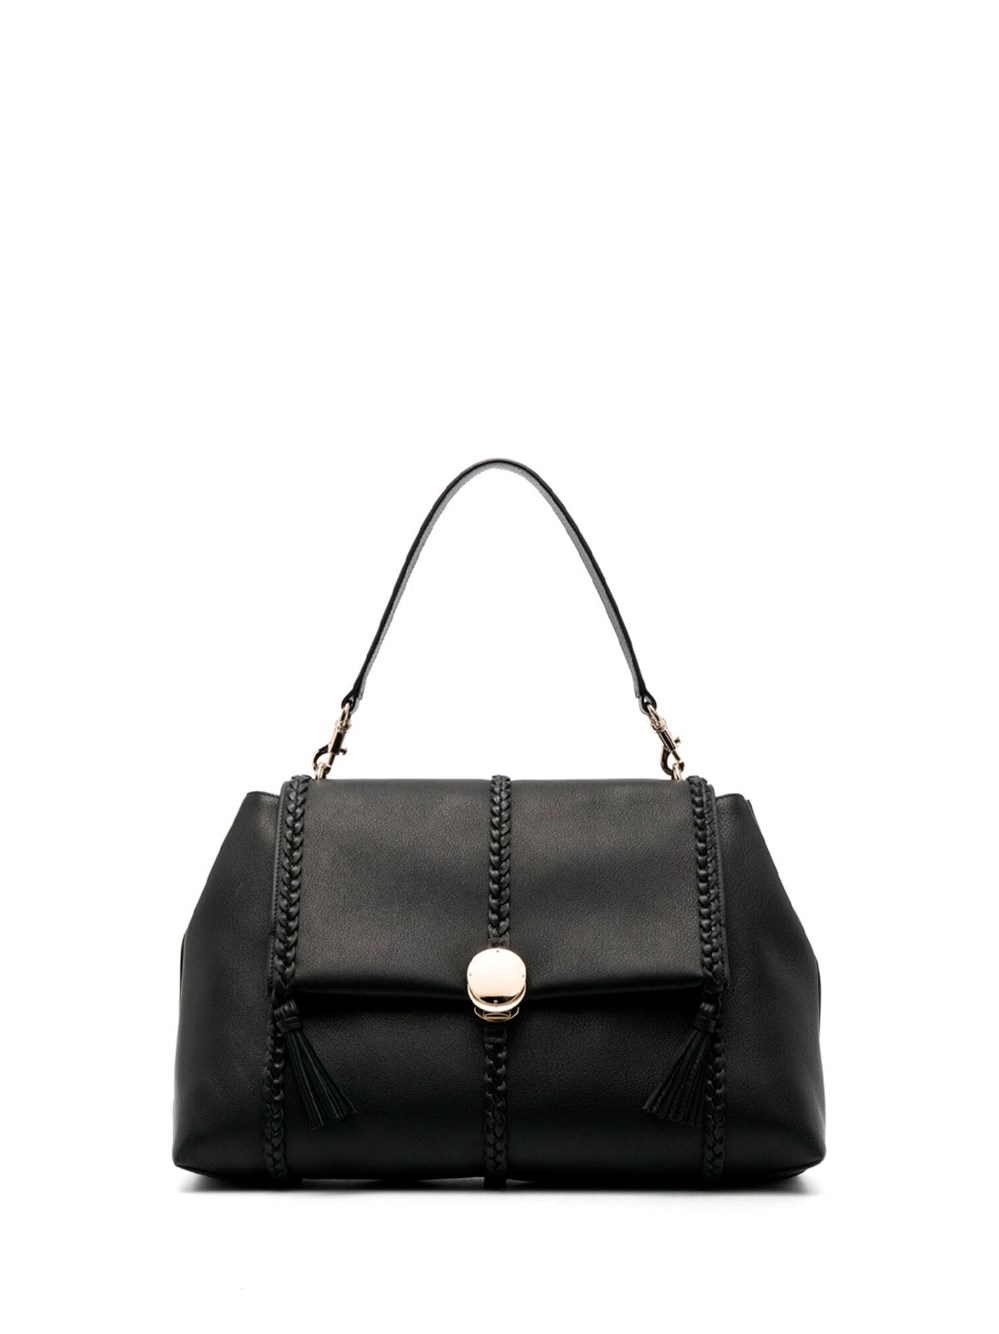 Chloé Penelope Large Leather Shoulder Bag In Black